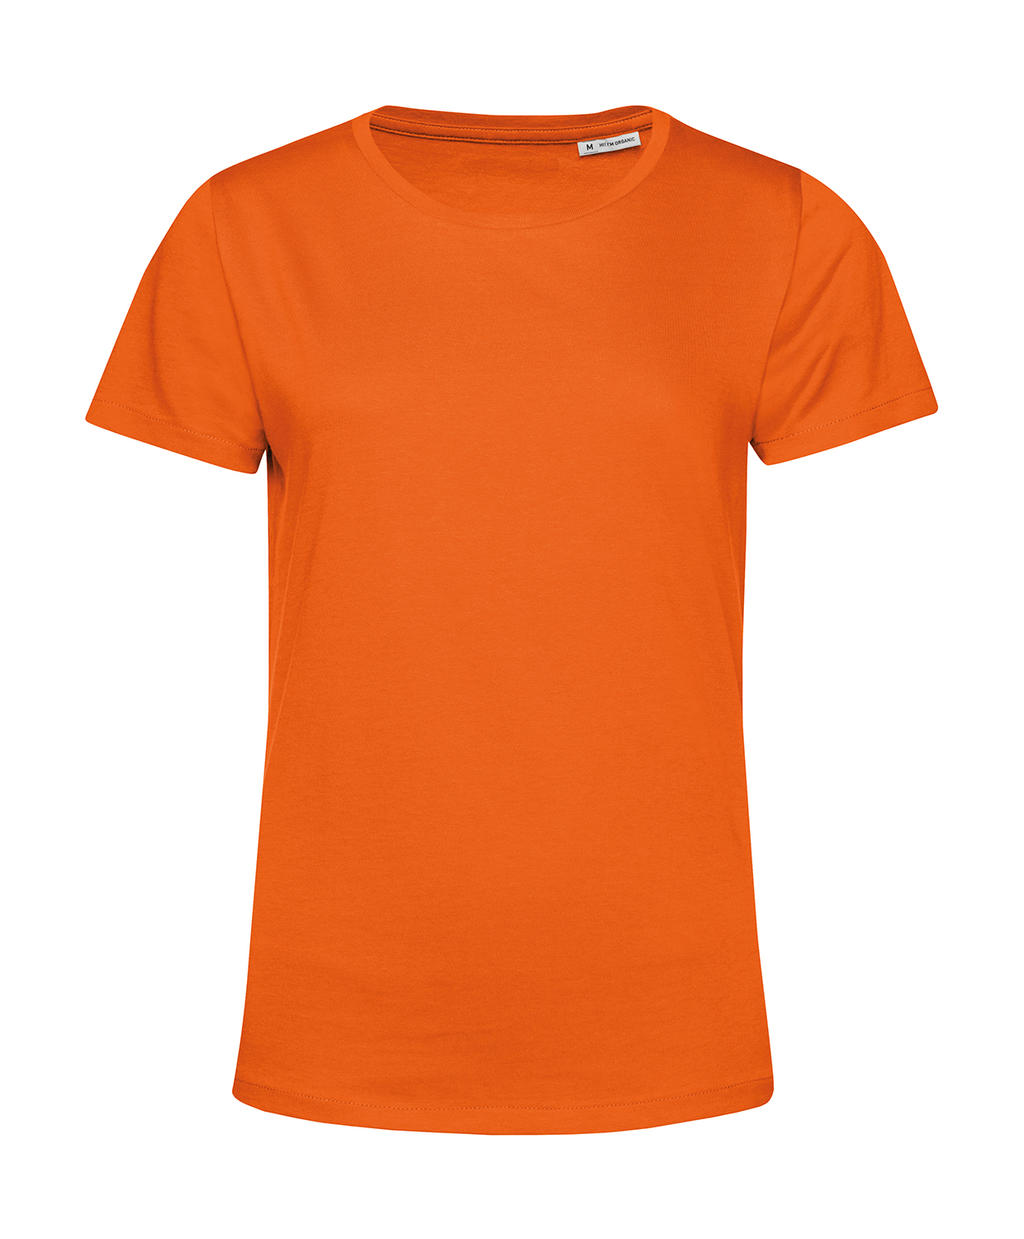 Tričko dámské BC Organic Inspire E150 - oranžové, M